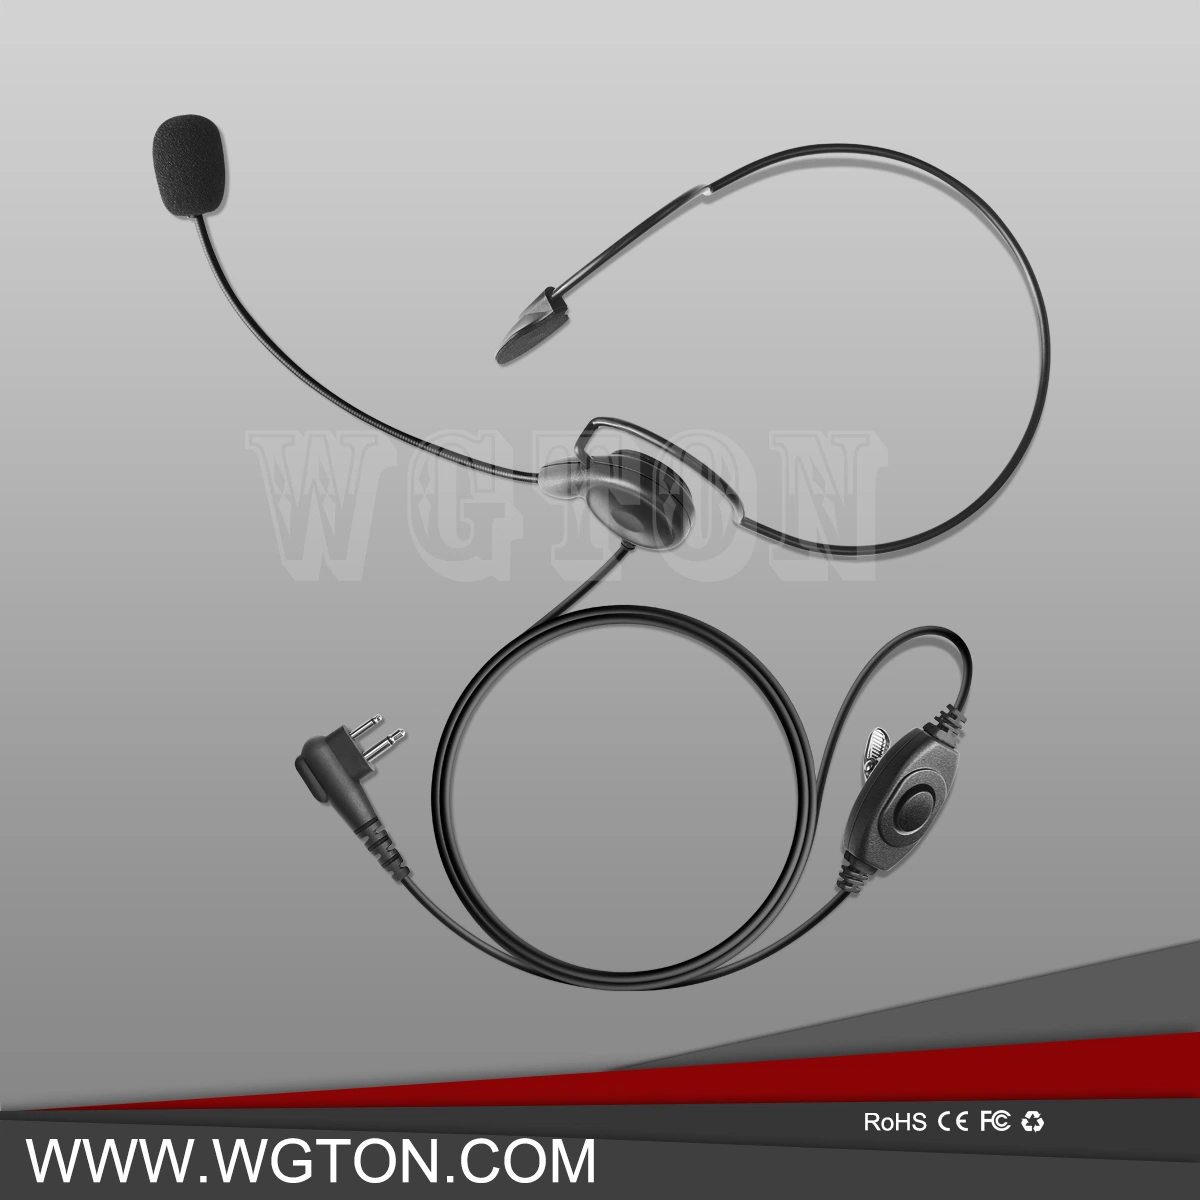 Casque d'écoute léger avec crochet d'oreille pour radio bidirectionnelle Motorola Dp3400.